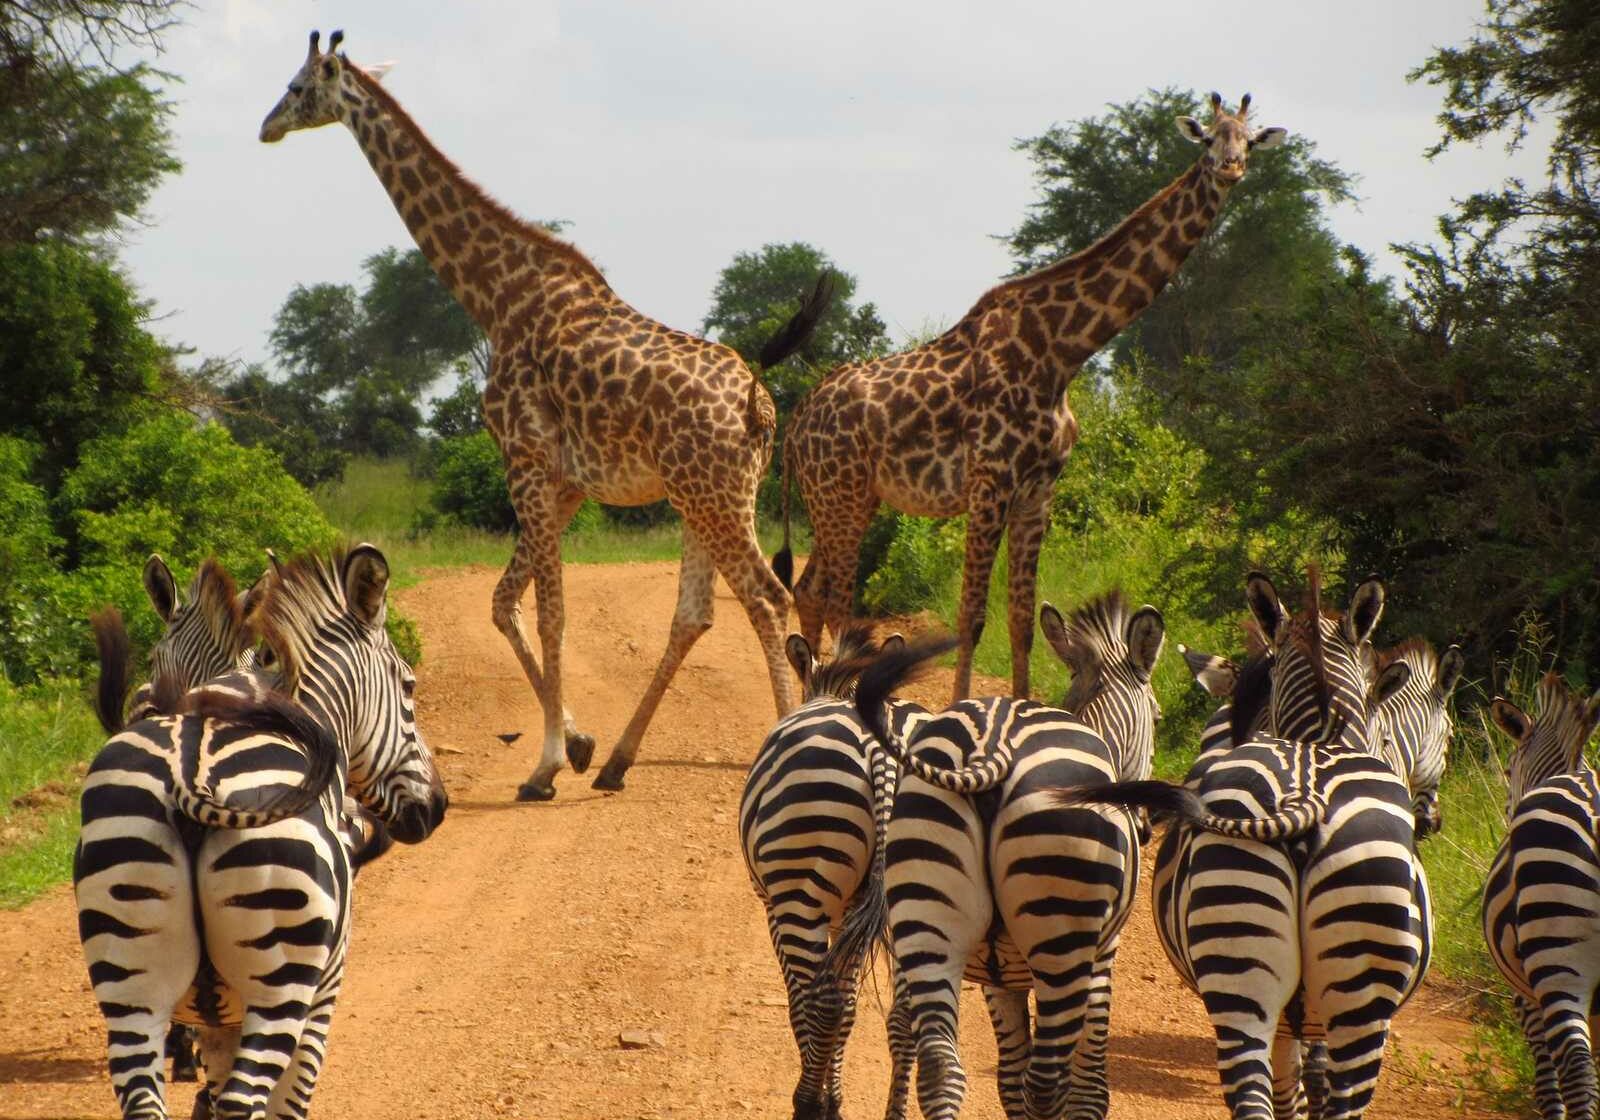 b3nharris-zebras-giraffs-765885-1600x